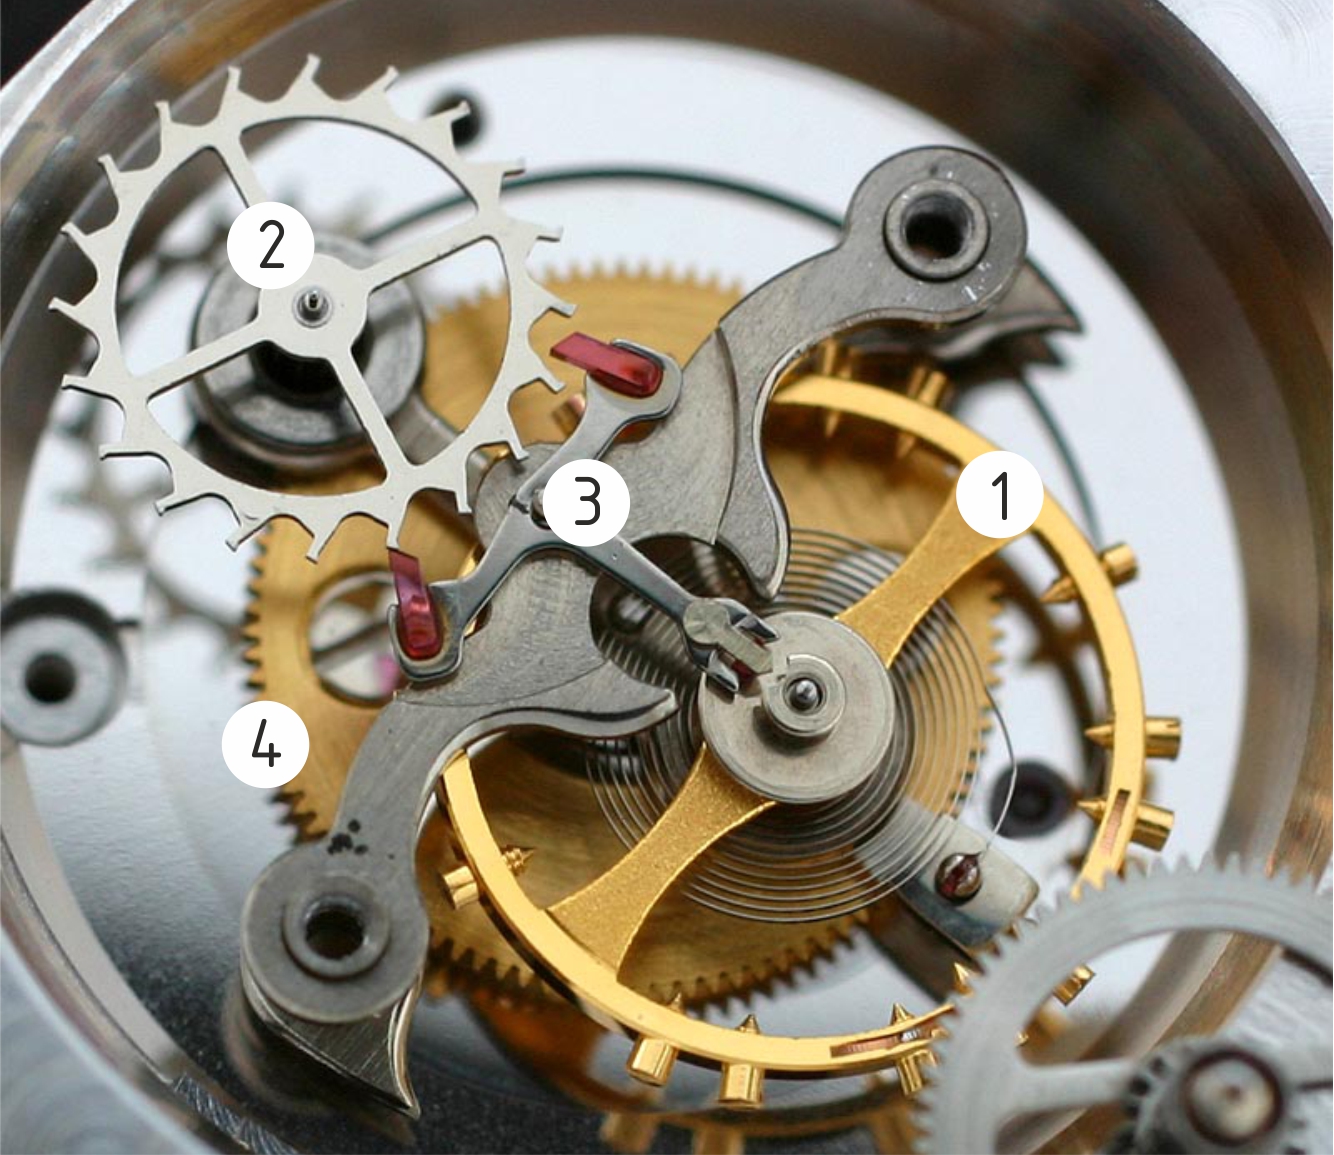 Ручной механизм часов. Турбийон. Часовой механизм турбийон. Часы с механизмом турбийон. Швейцарские хронографы турбийон.